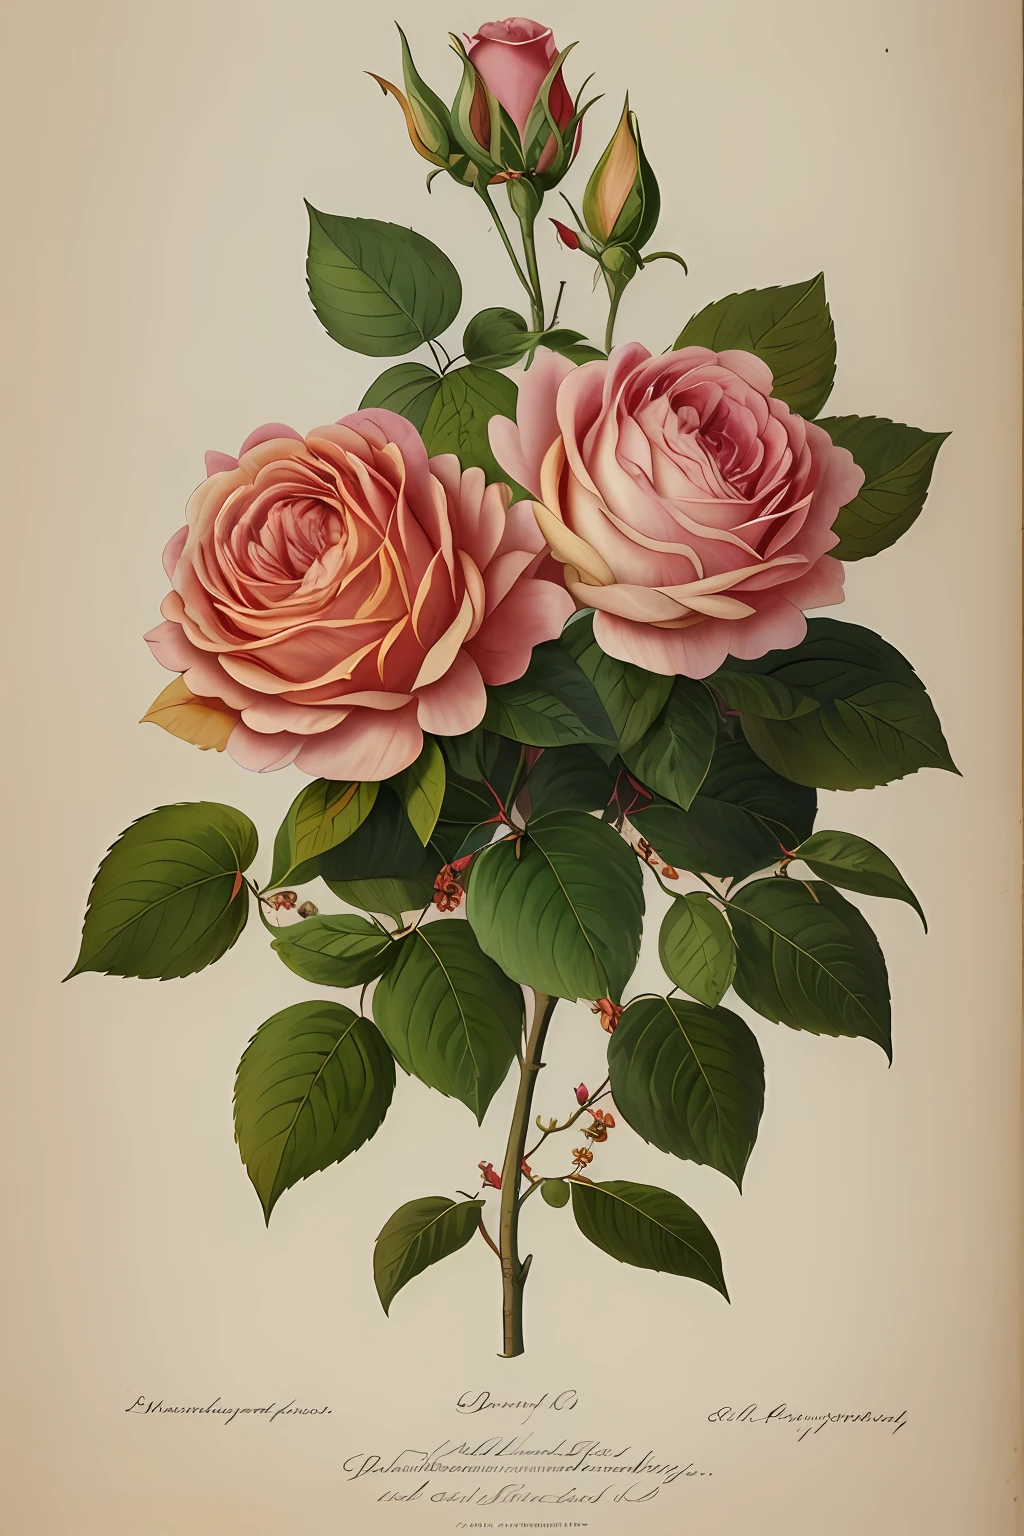 (beste Qualität:1.2), (ausführlich:1.2), (Meisterwerk:1.2), Vintage botanische Illustrationen der größeren Provence Rose (1770 1775) in hoher Auflösung von John Edwards